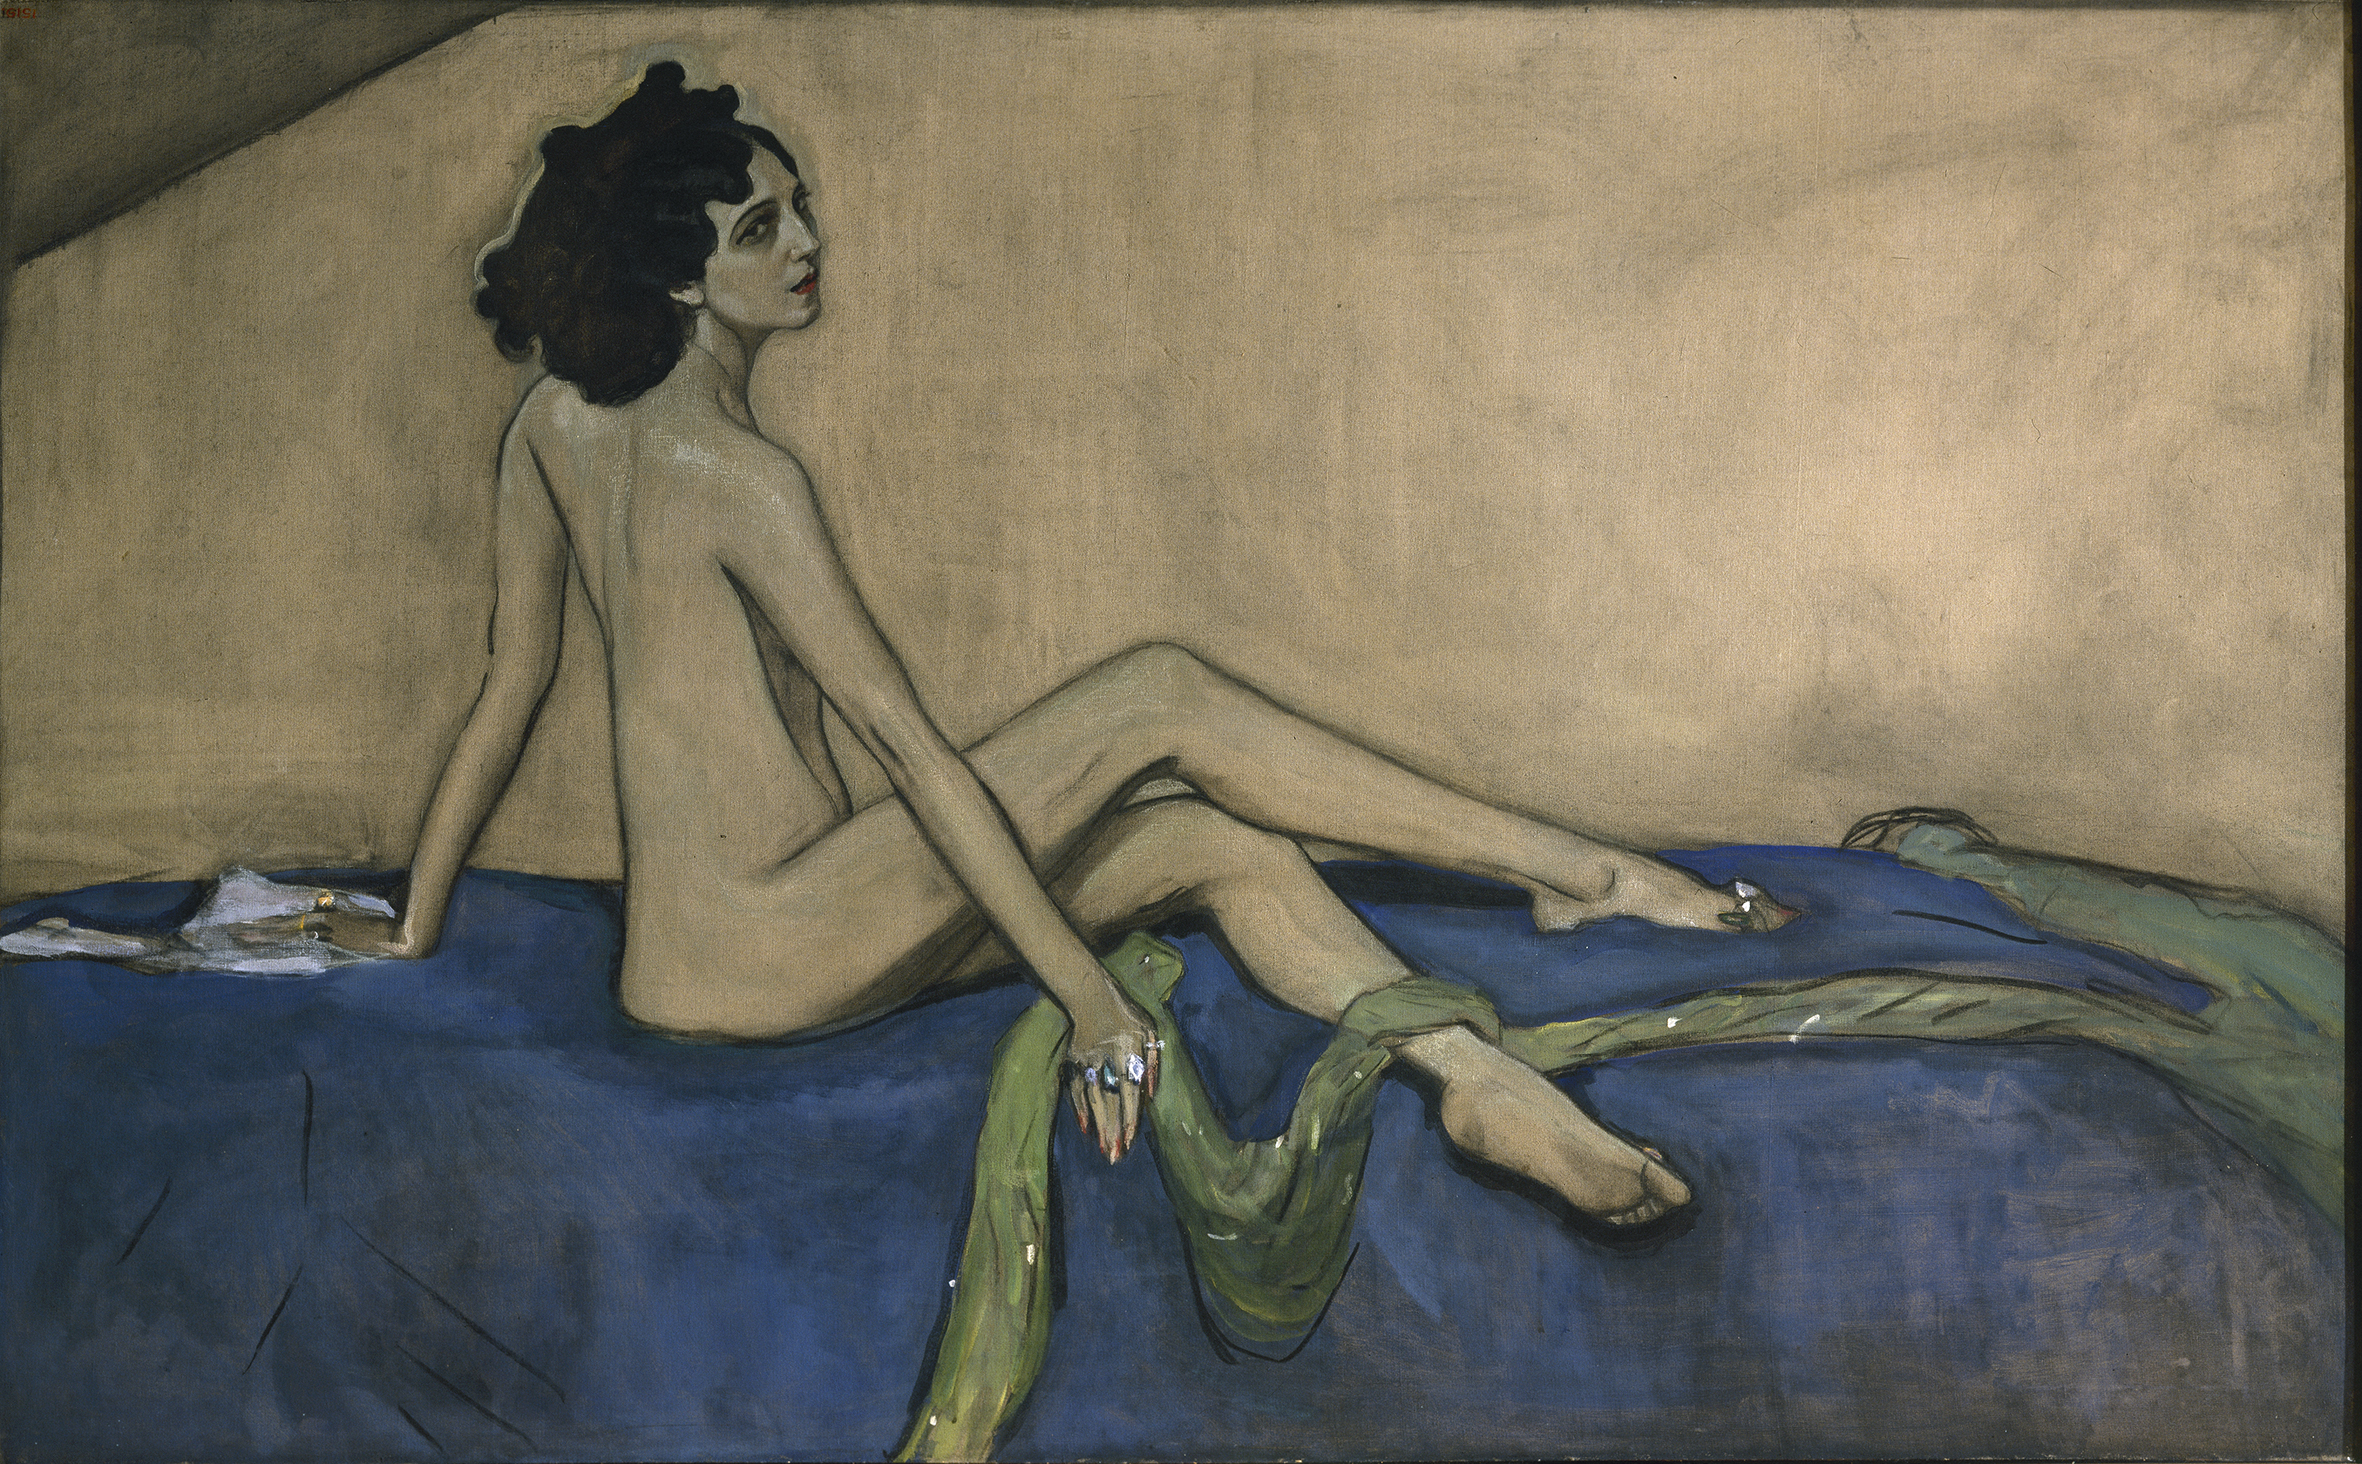 ایدا روبینشتاین by Valentin Serov - 1910 میلادی - 147 x 233 cm 